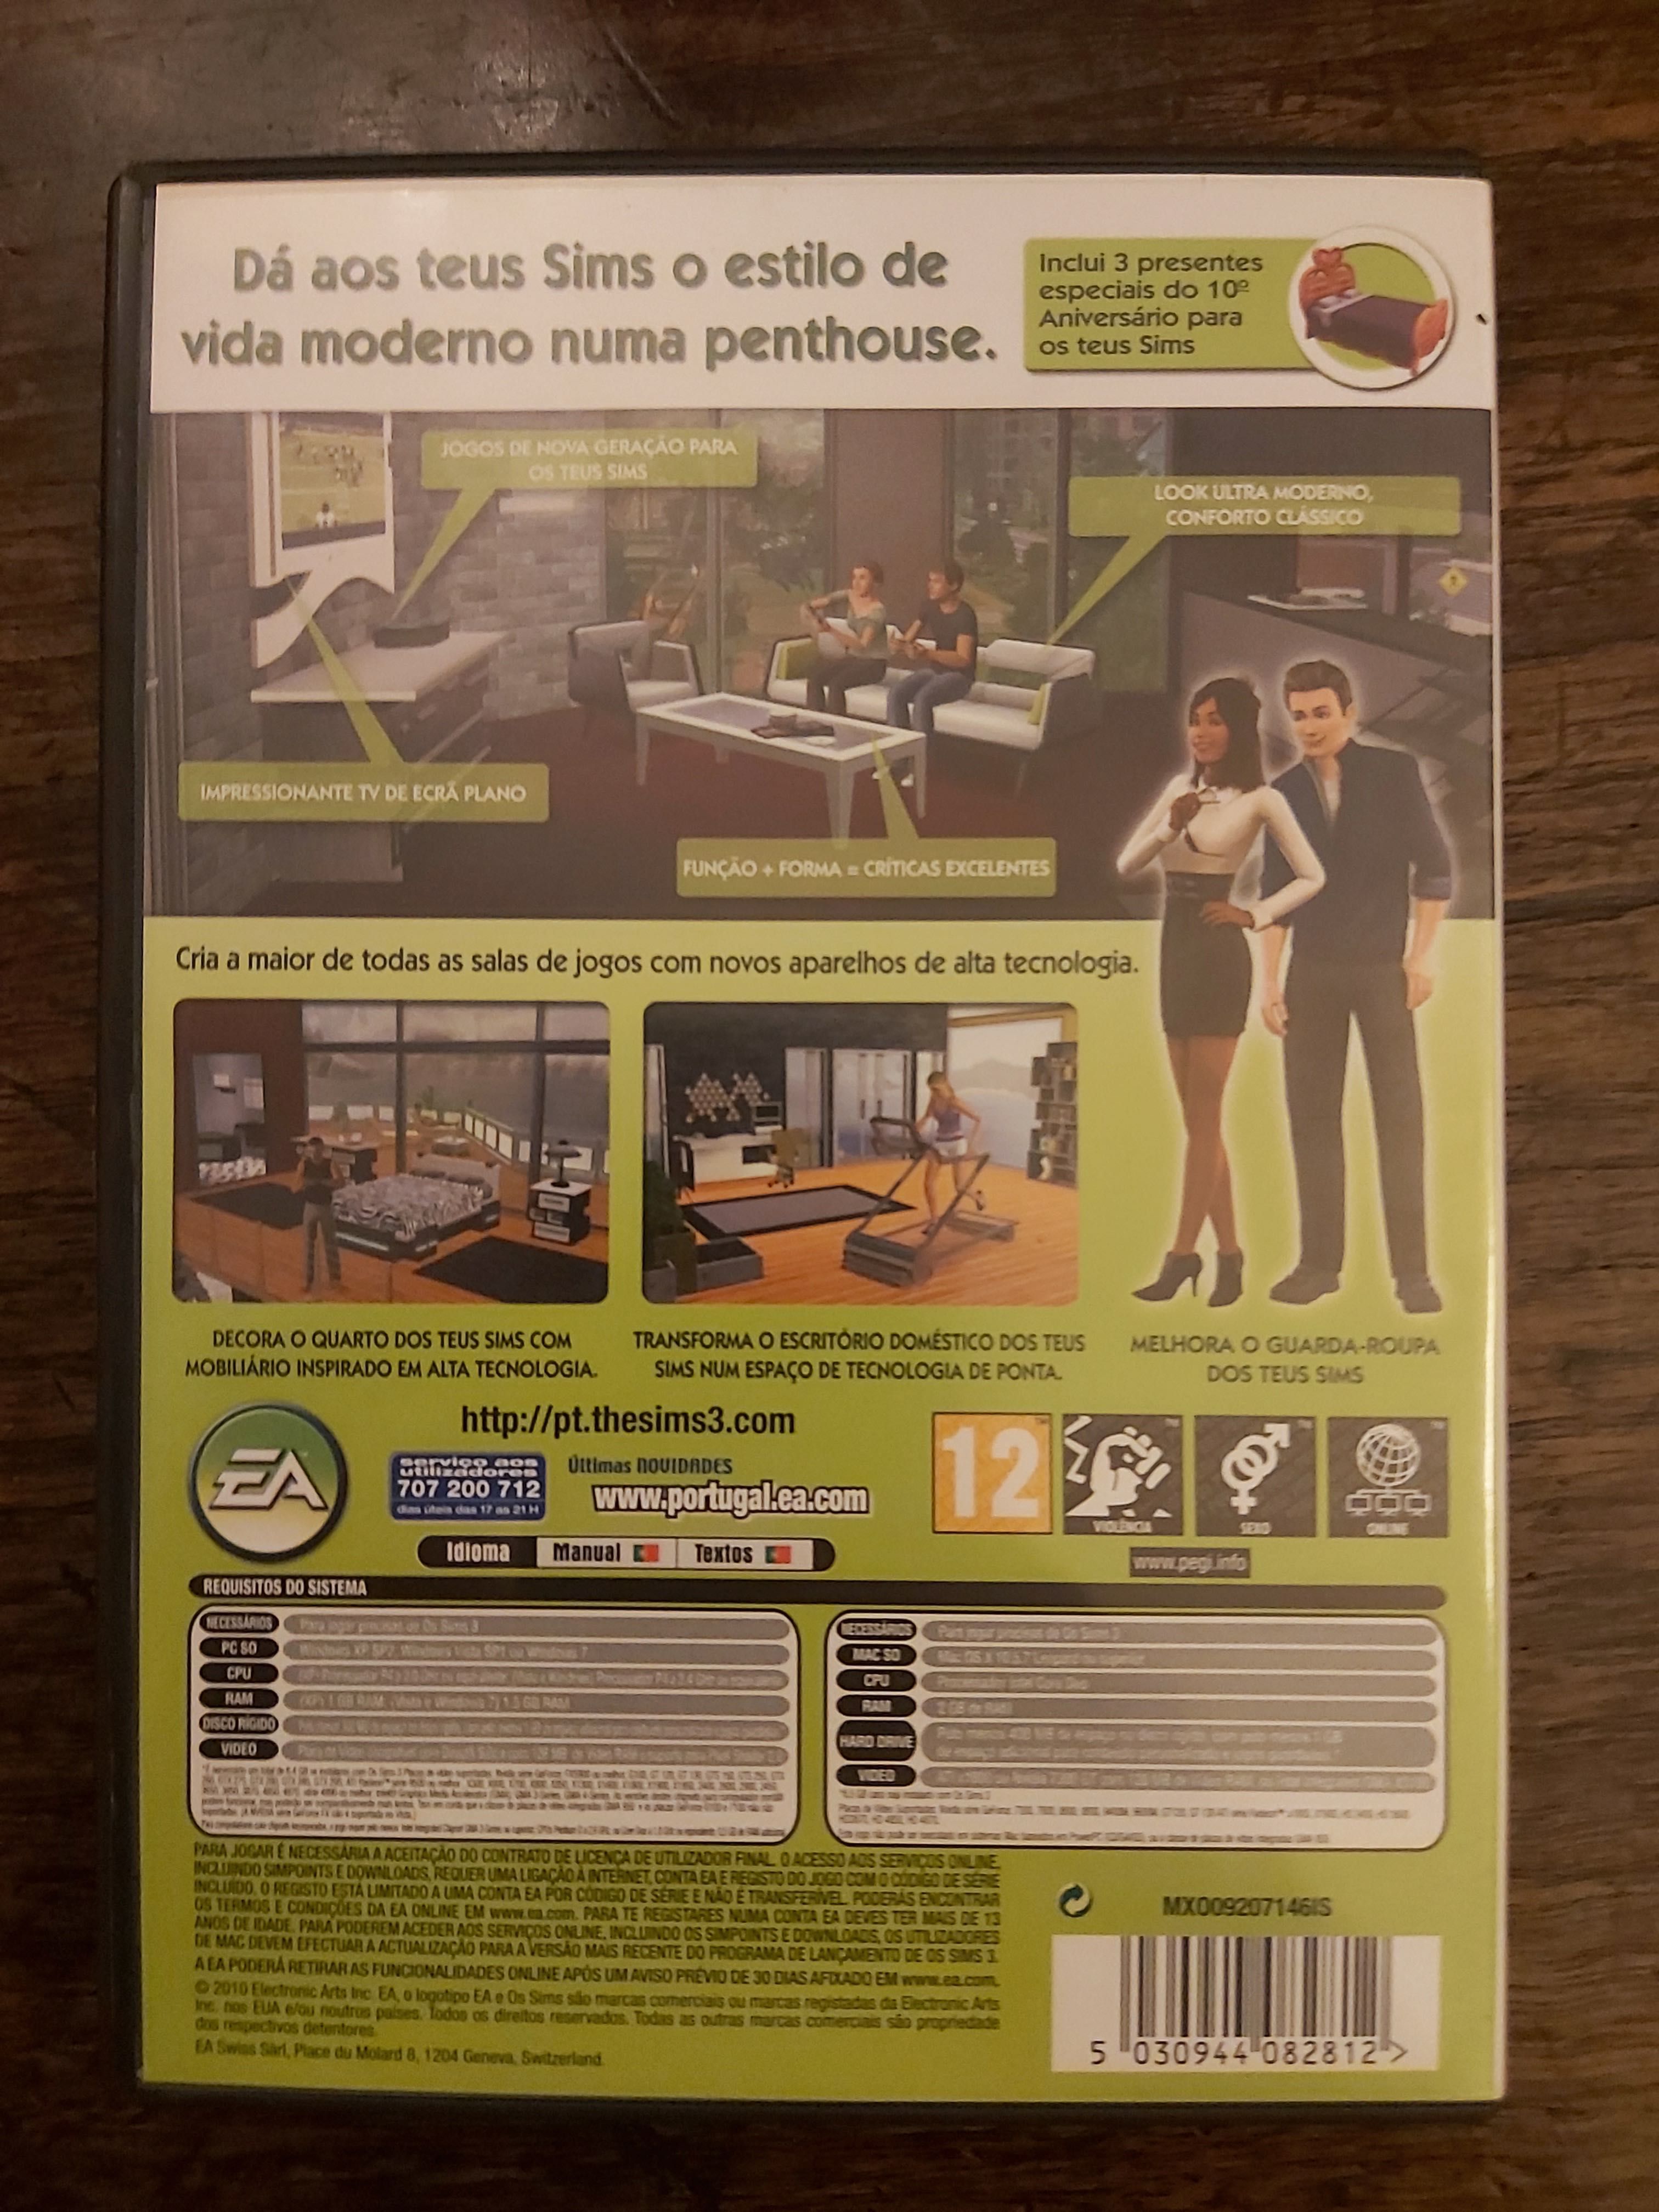 Os Sims 3: Design High Tech (Acessórios)